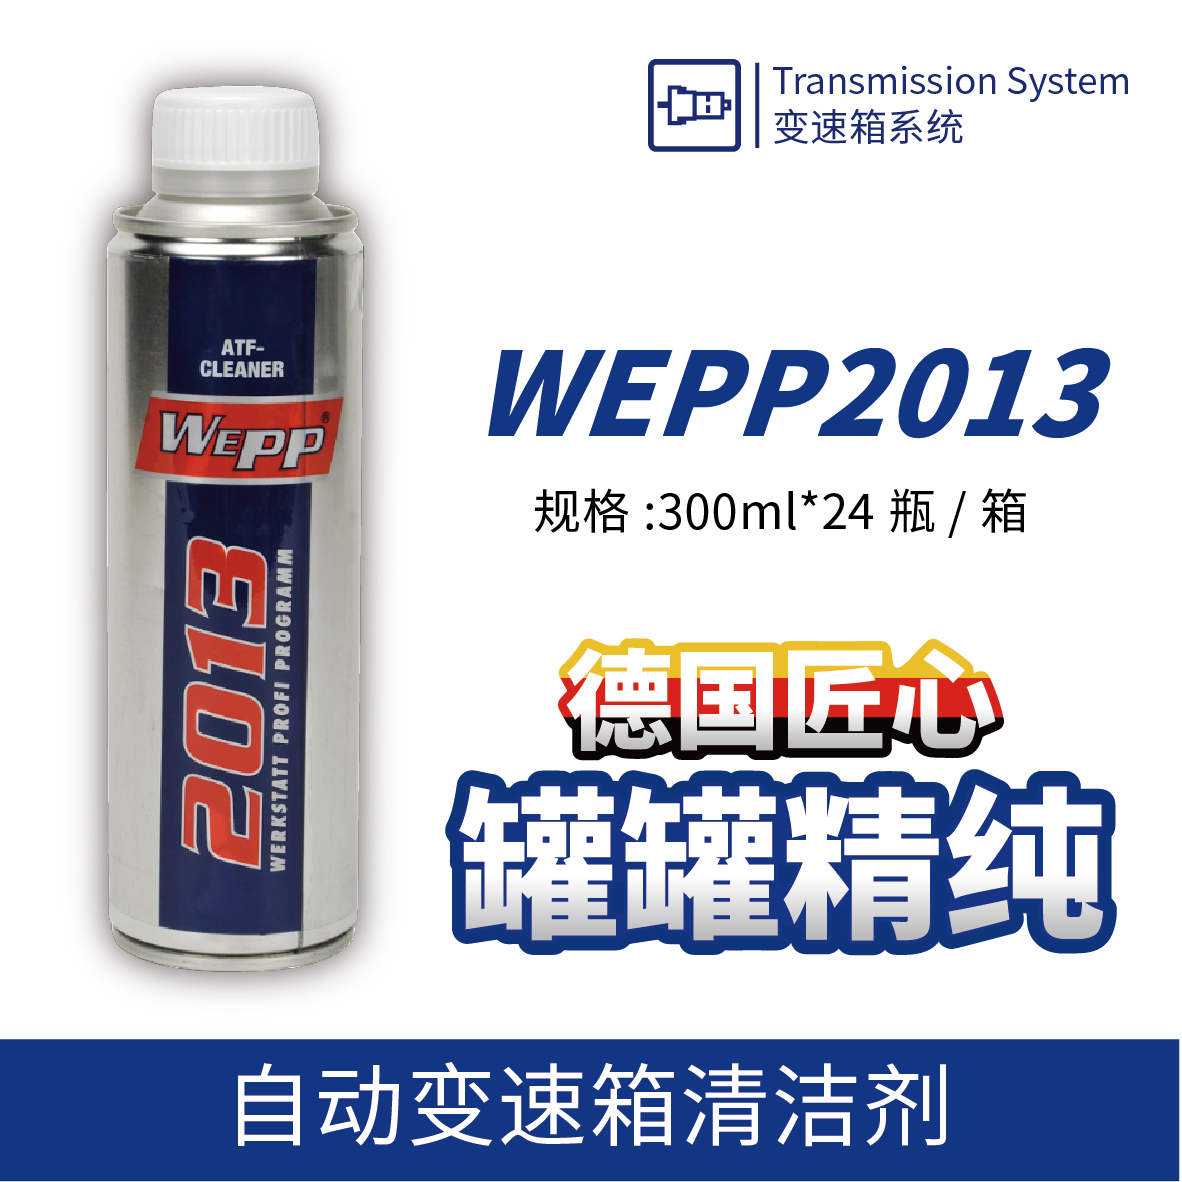 WEPP2013 自动变速箱清洁剂